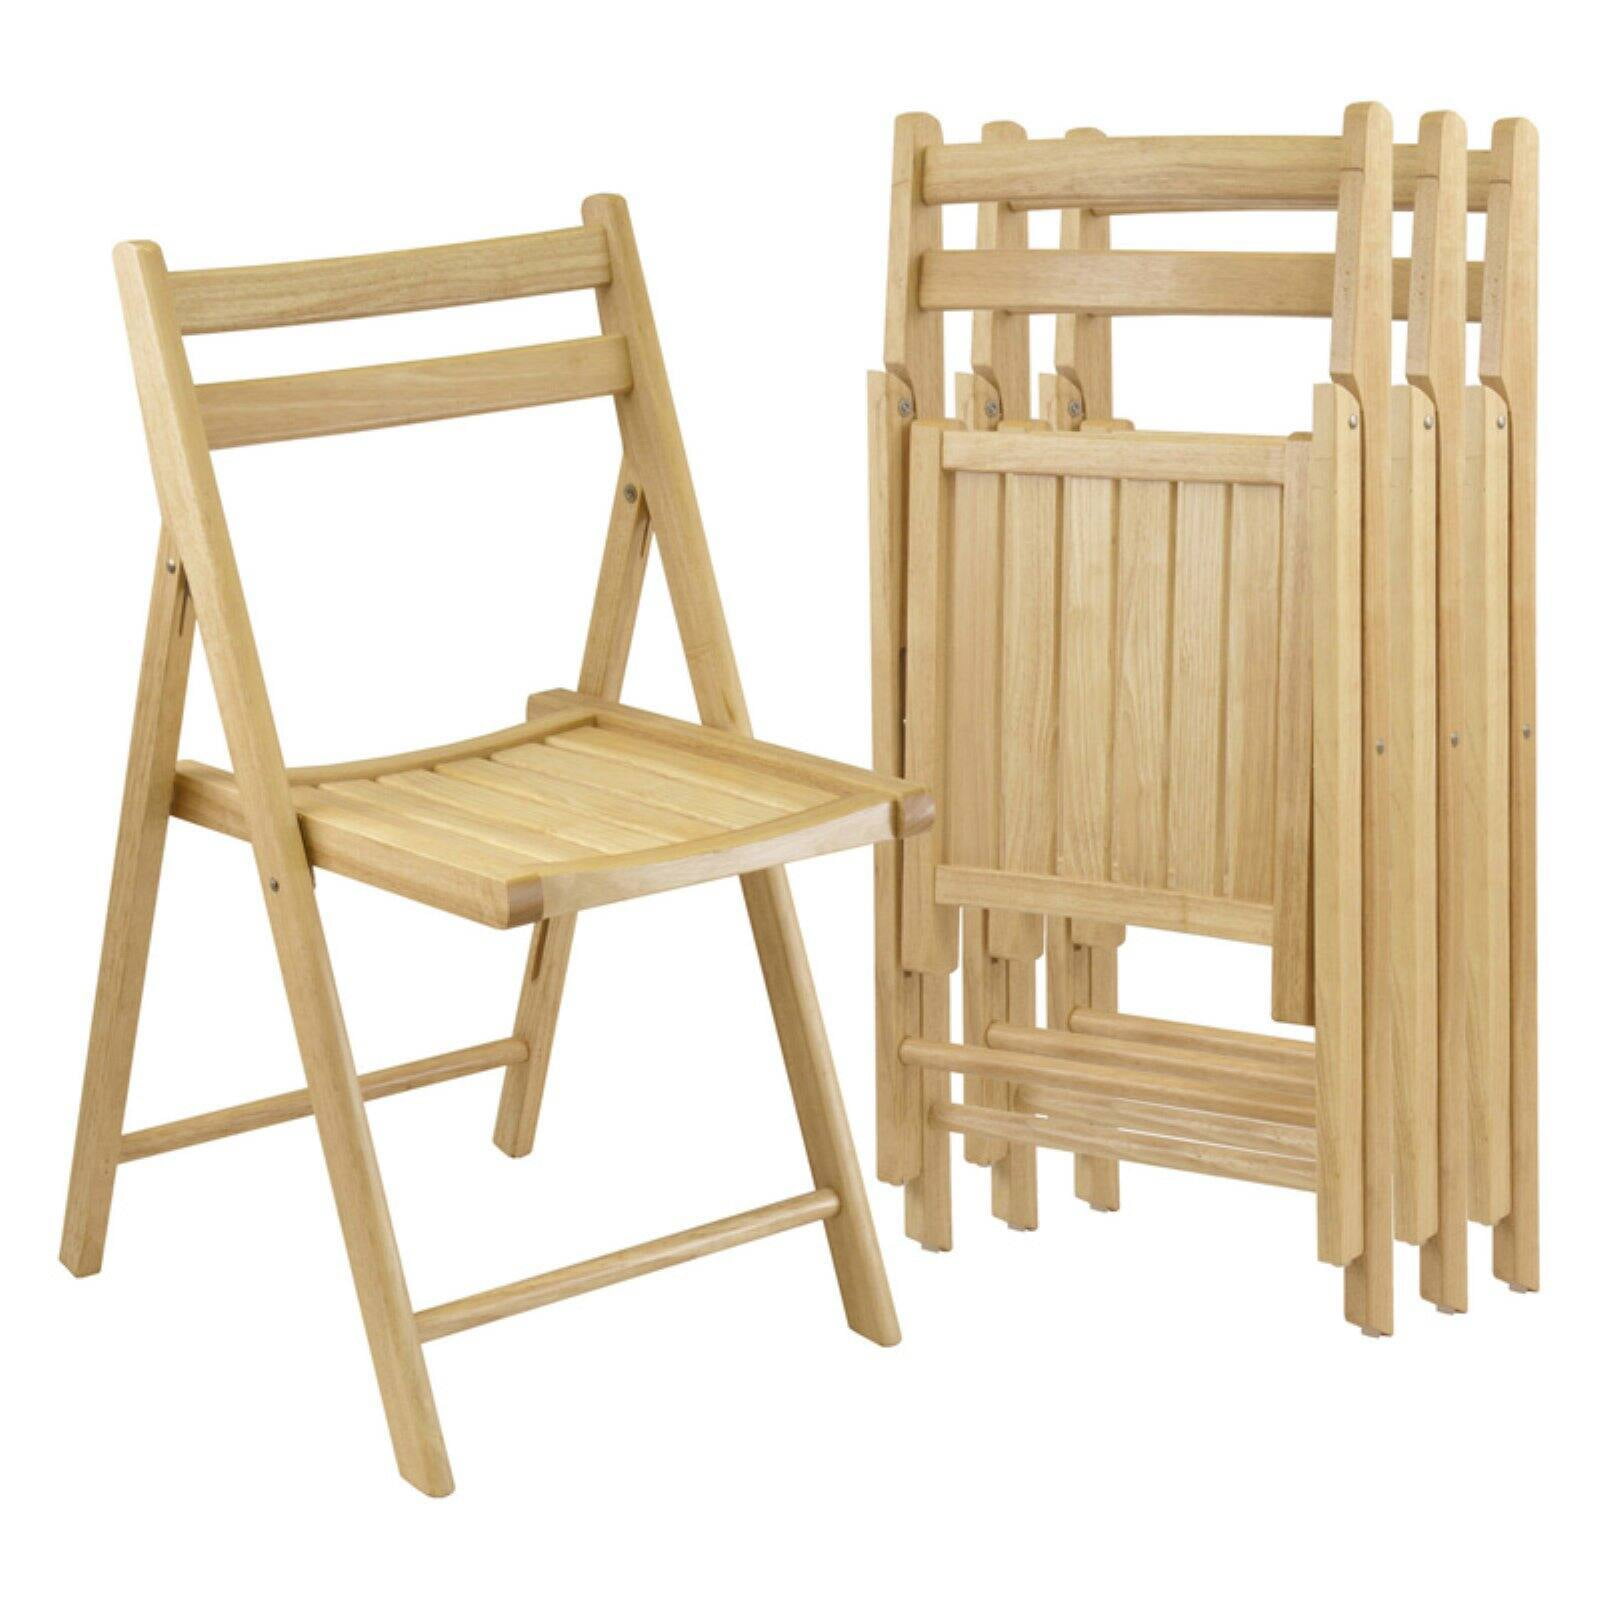 Куплю складные деревянные стулья. Стул Chair (Чаир) раскладной. Copland стул складной. Табуретка складная икеа. Набор складных стульев Copland эвкалипт.